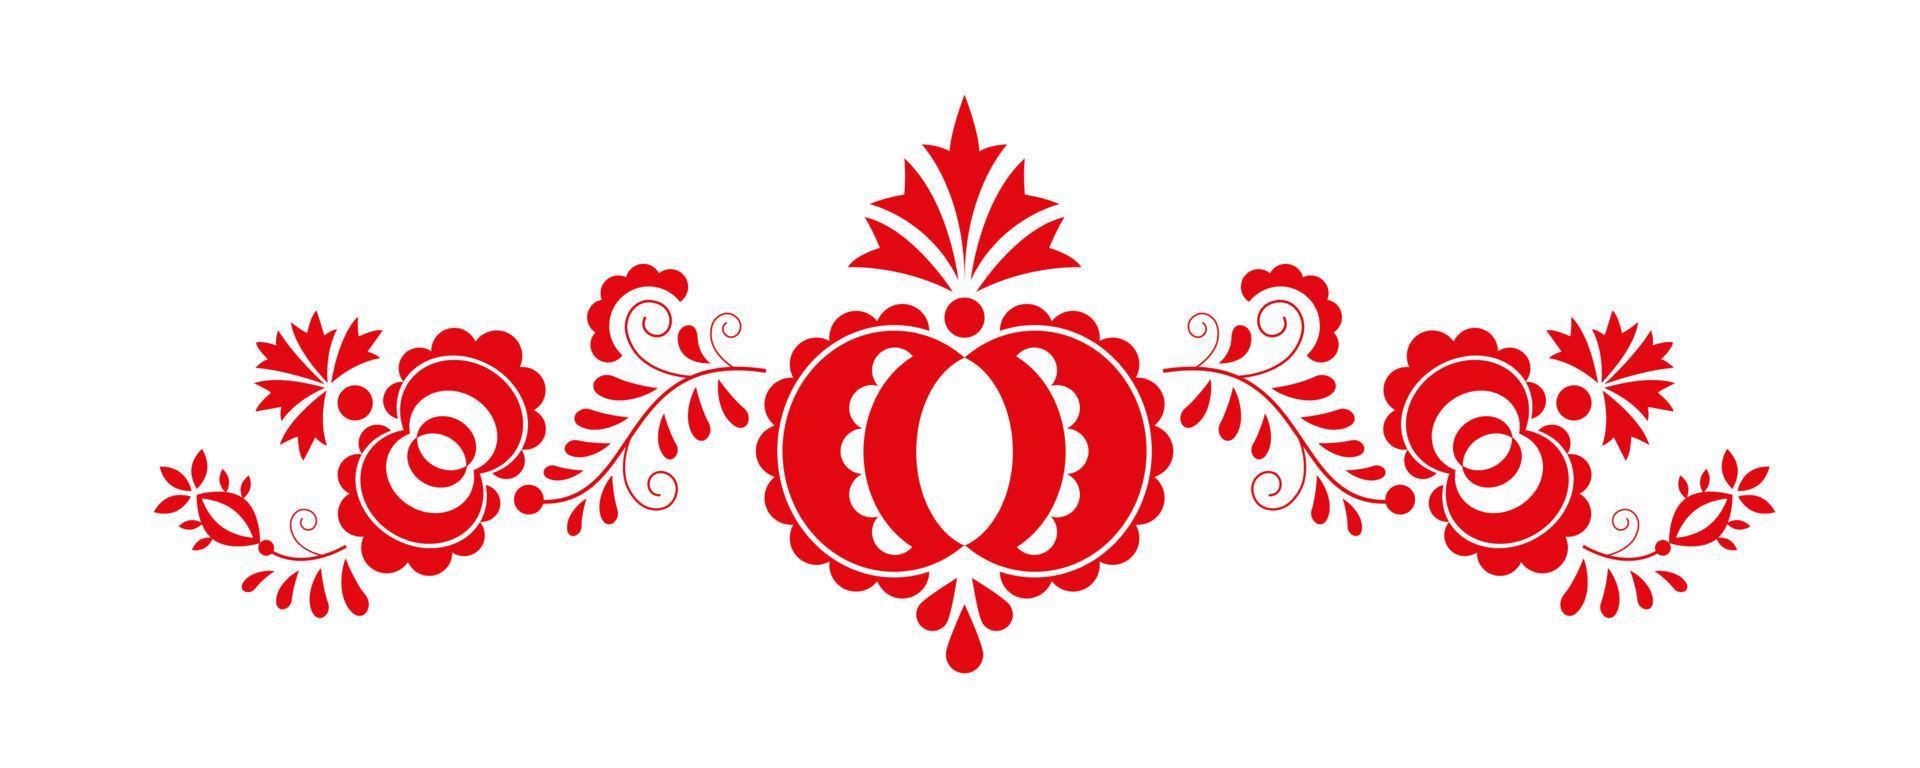 traditionelle Volksverzierung. das mährische ornament aus der region slowakei. Blumenstickerei-Symbol auf weißem Hintergrund. Vektor-Illustration vektor